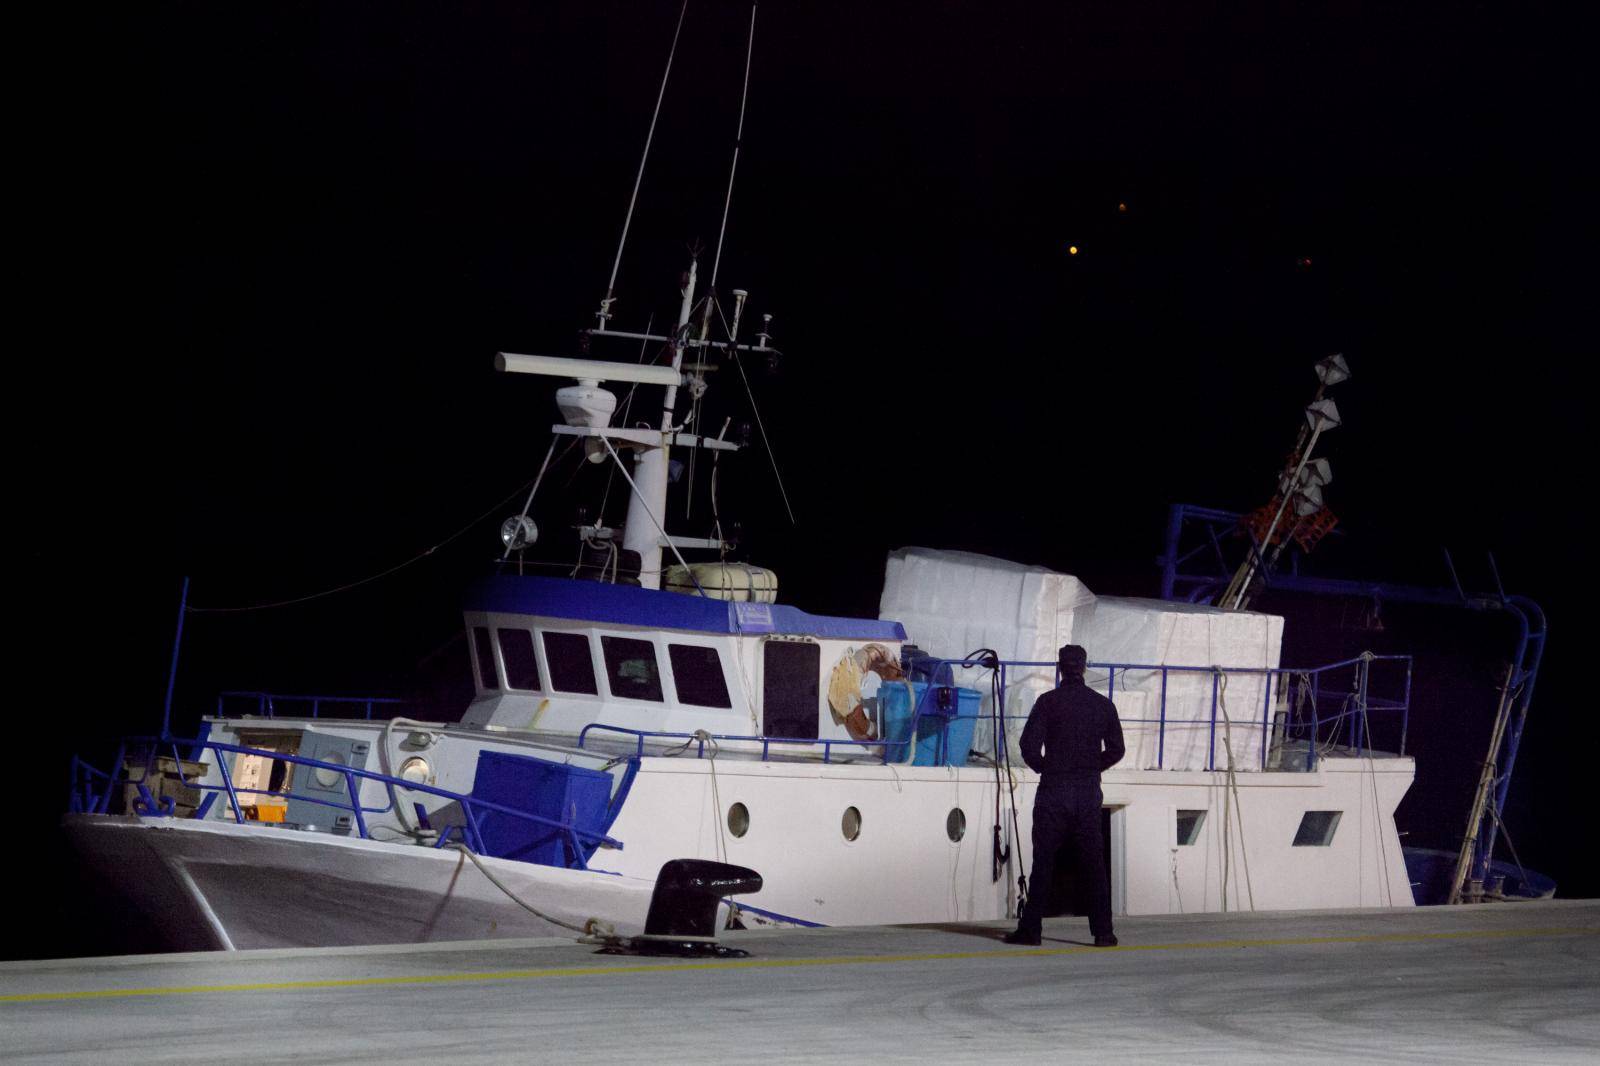 Talijani opet u našim vodama: Ribaricu ulovili kod Palagruže